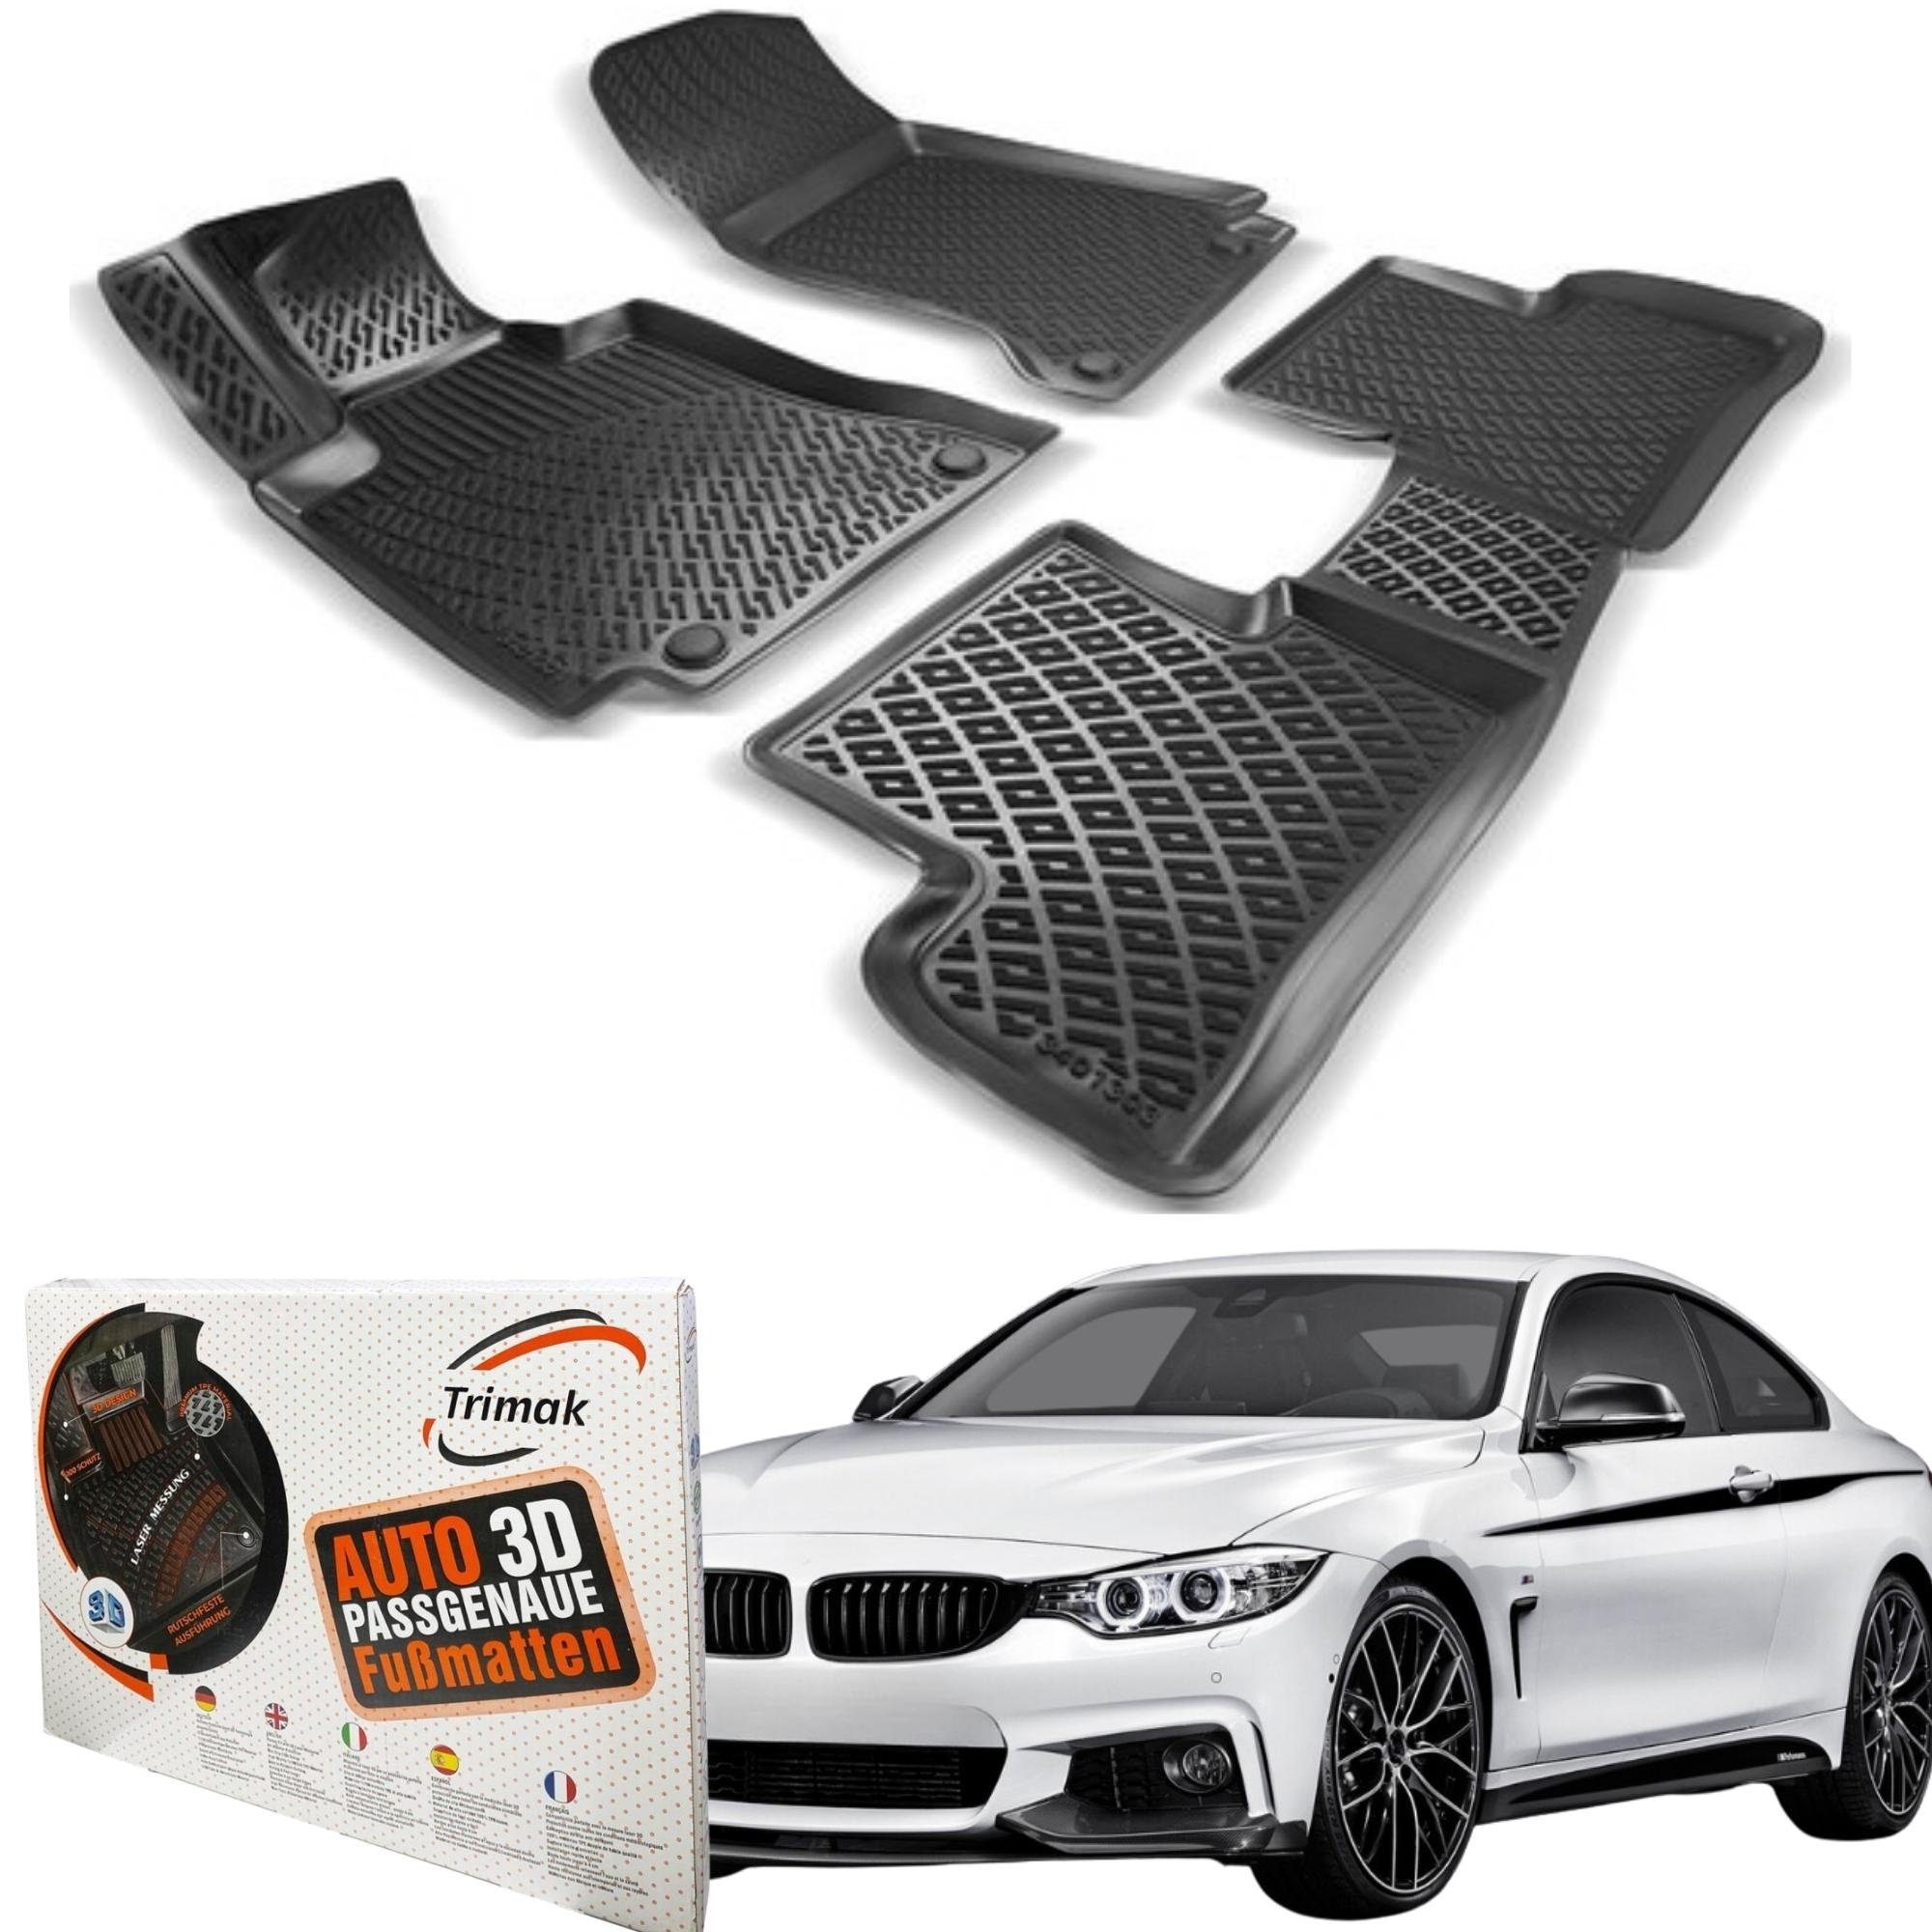 Exclusive Fußmatten für BMW 3er E90 E91 Touring Kombi Limo Bj